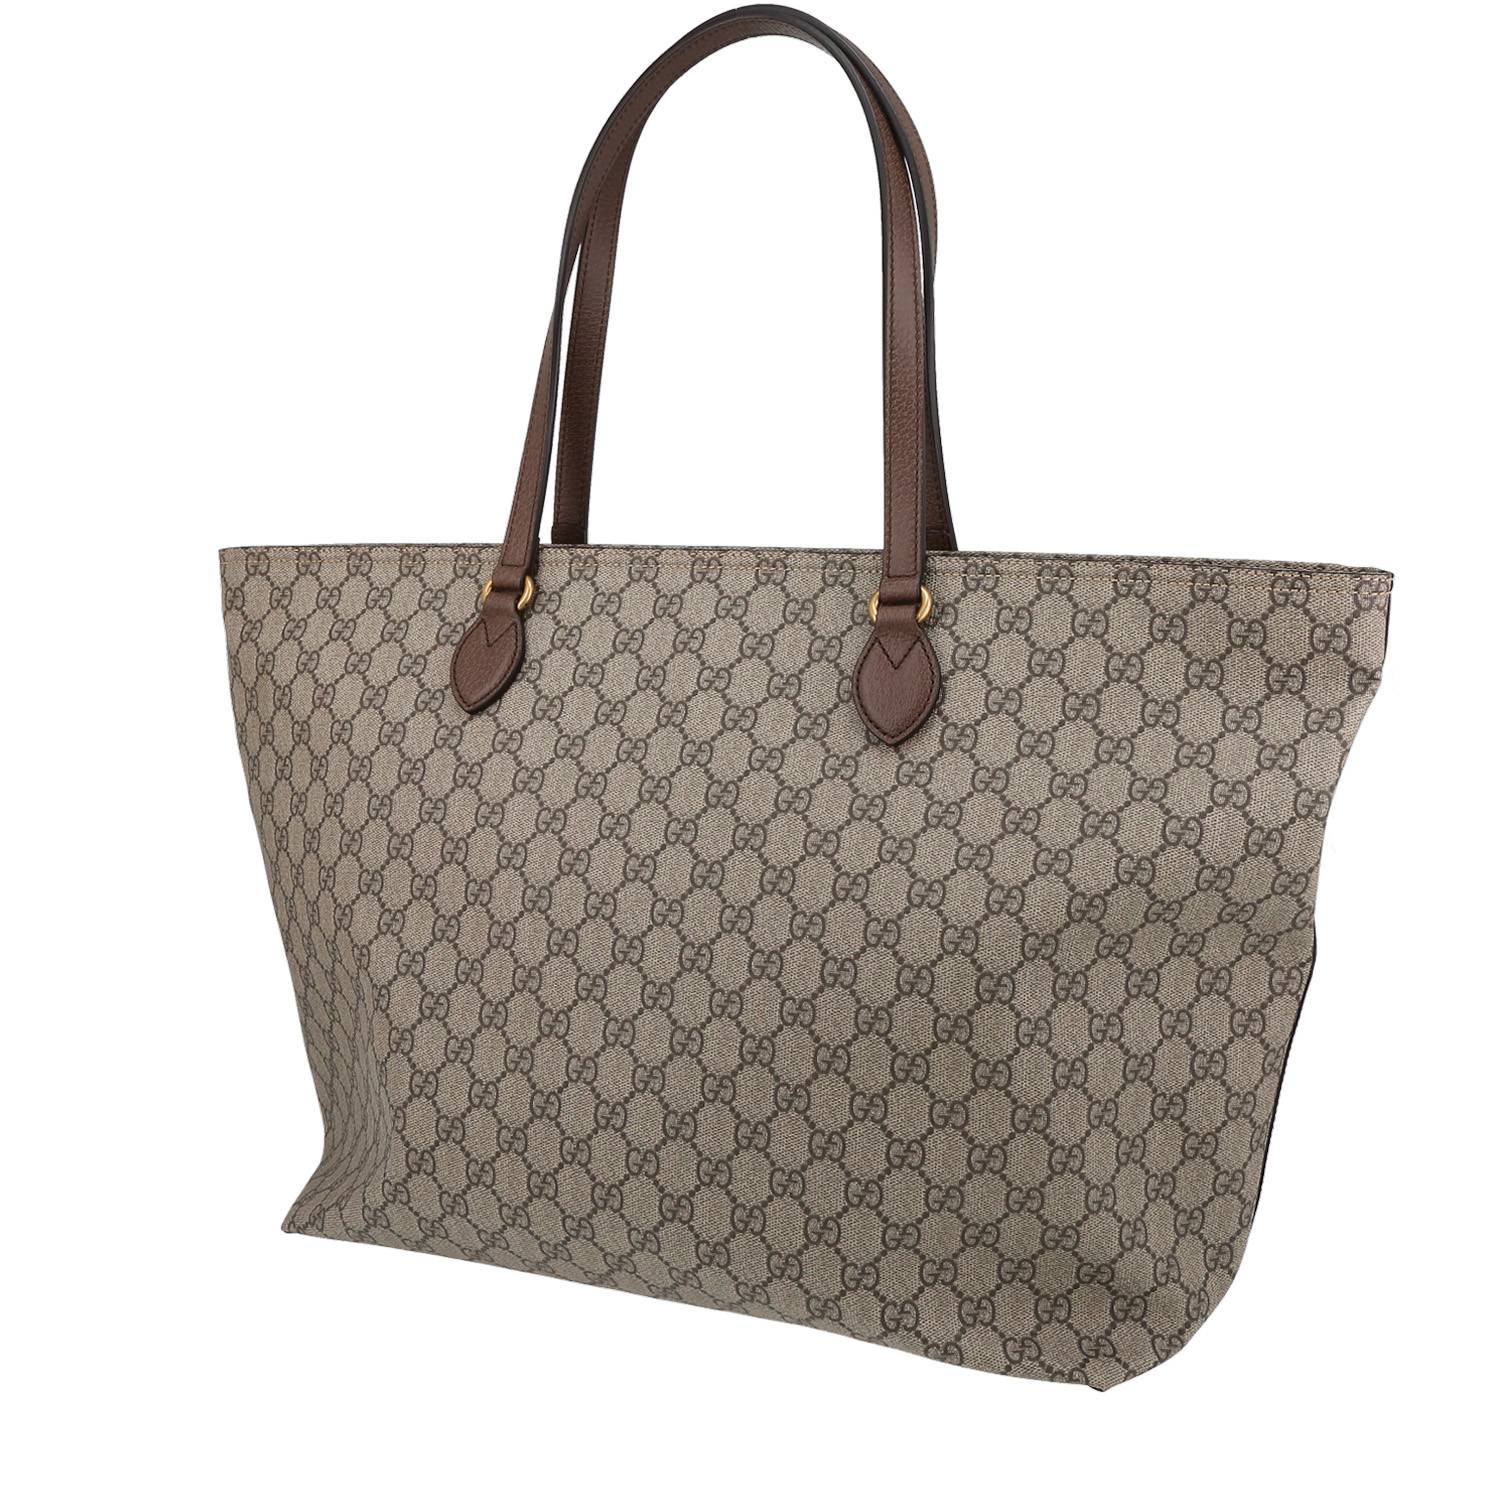 Gucci Shopping Tote 402836, Kenzo medium Onda bucket bag